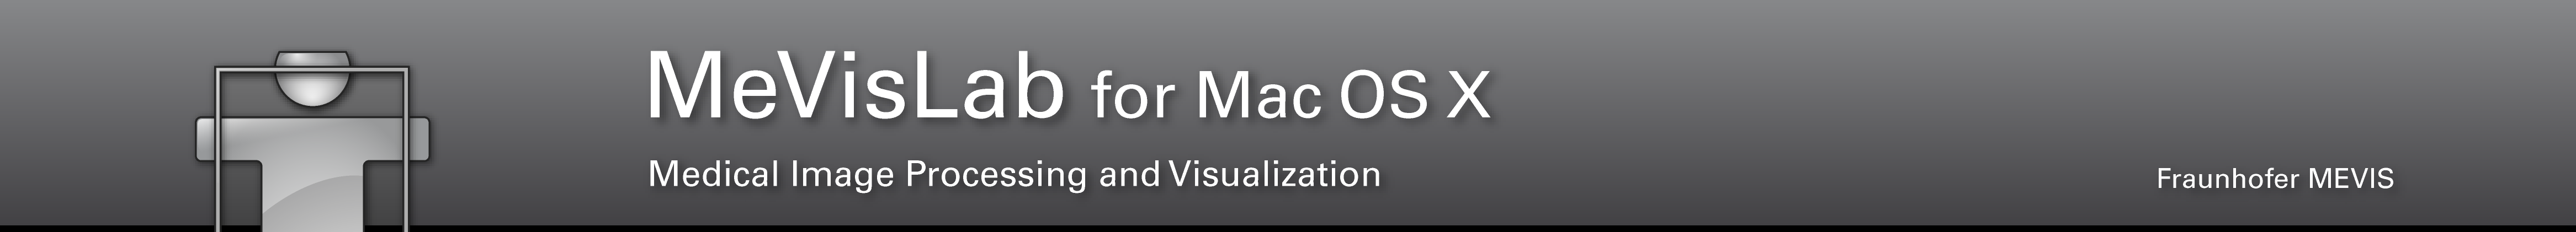 MeVisLab for Mac OS X